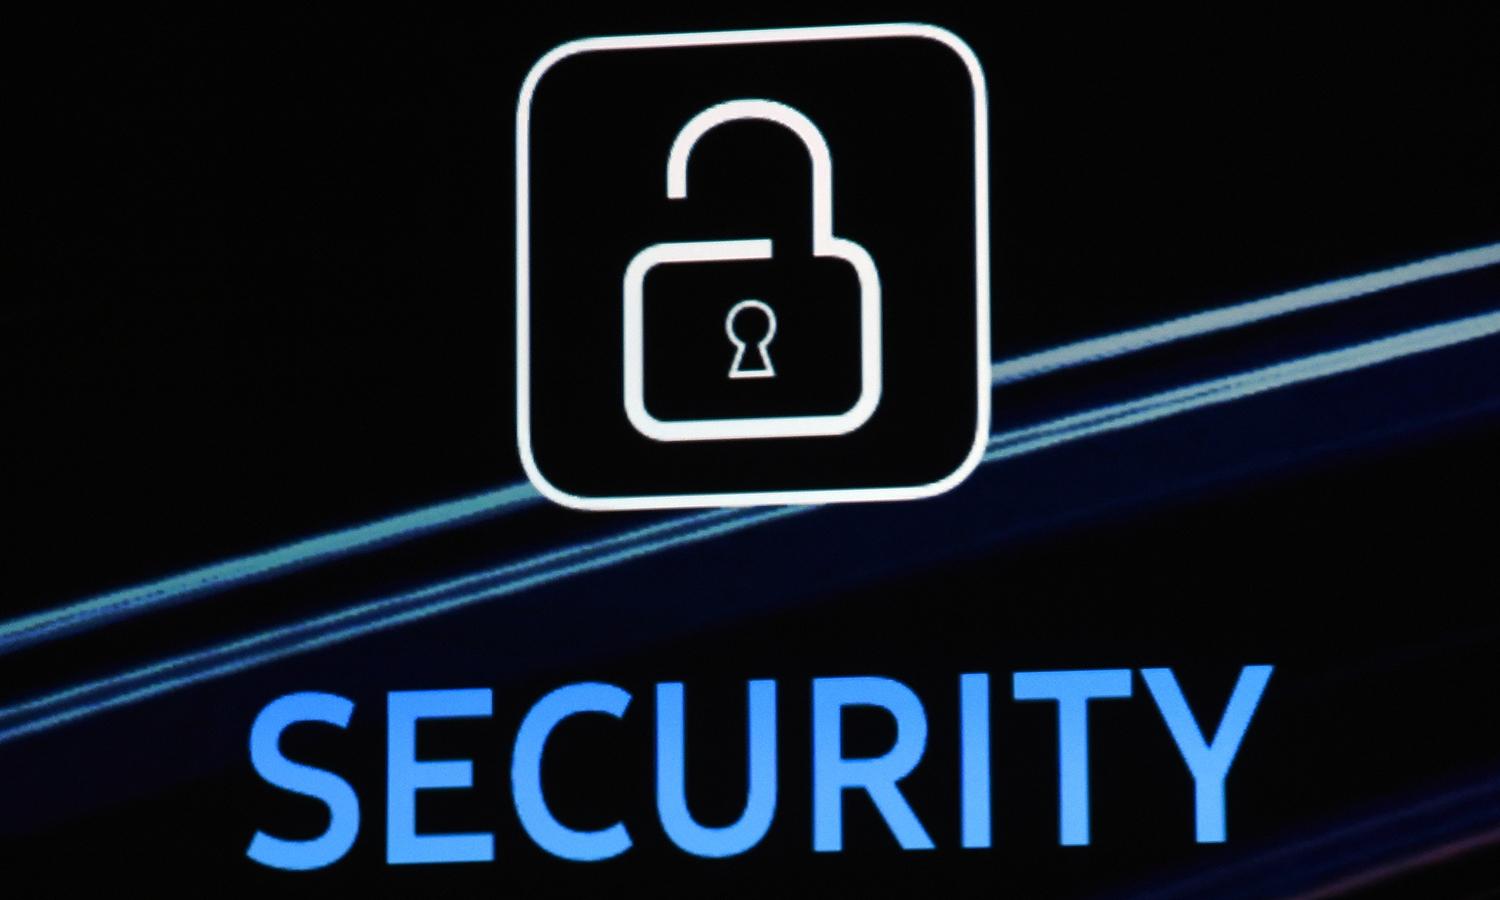 A security logo